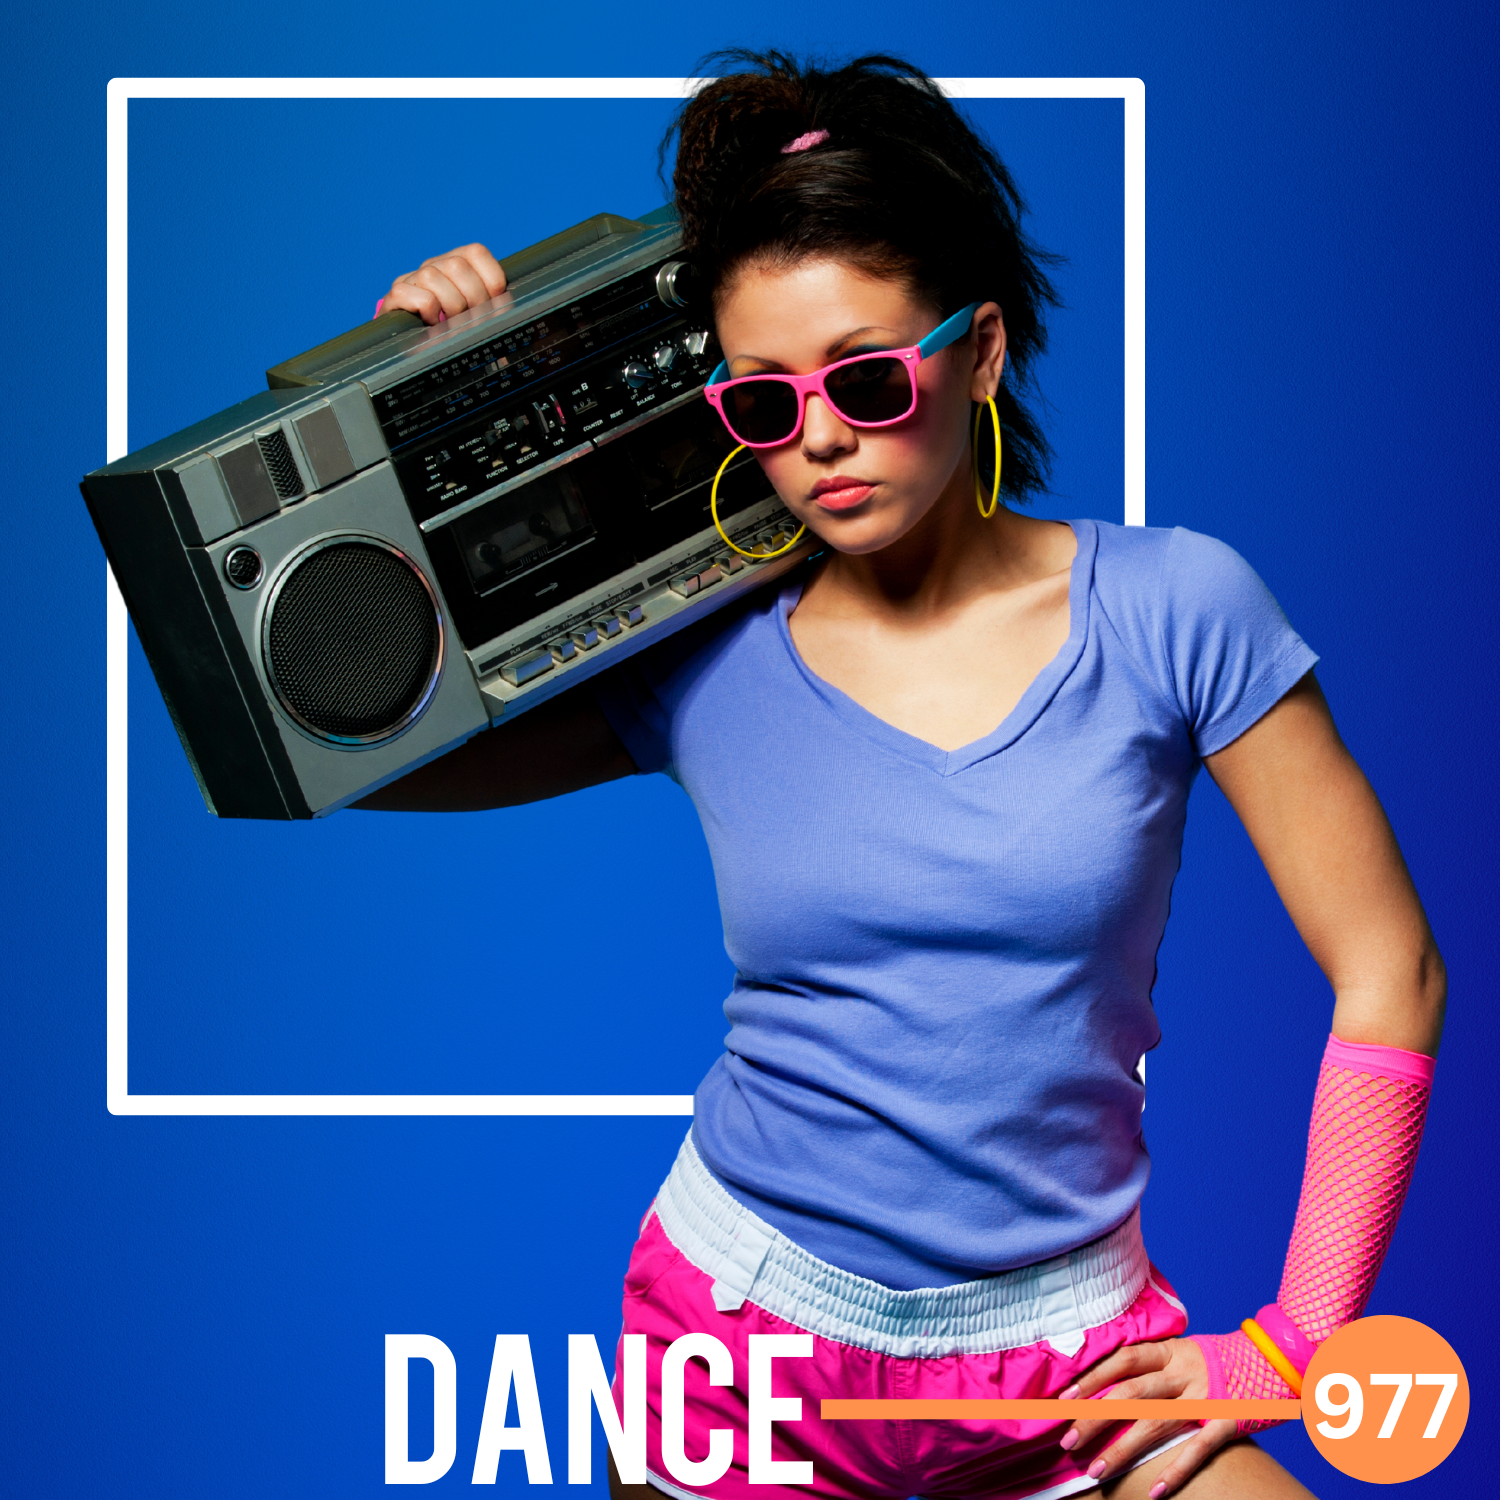 Dance 977